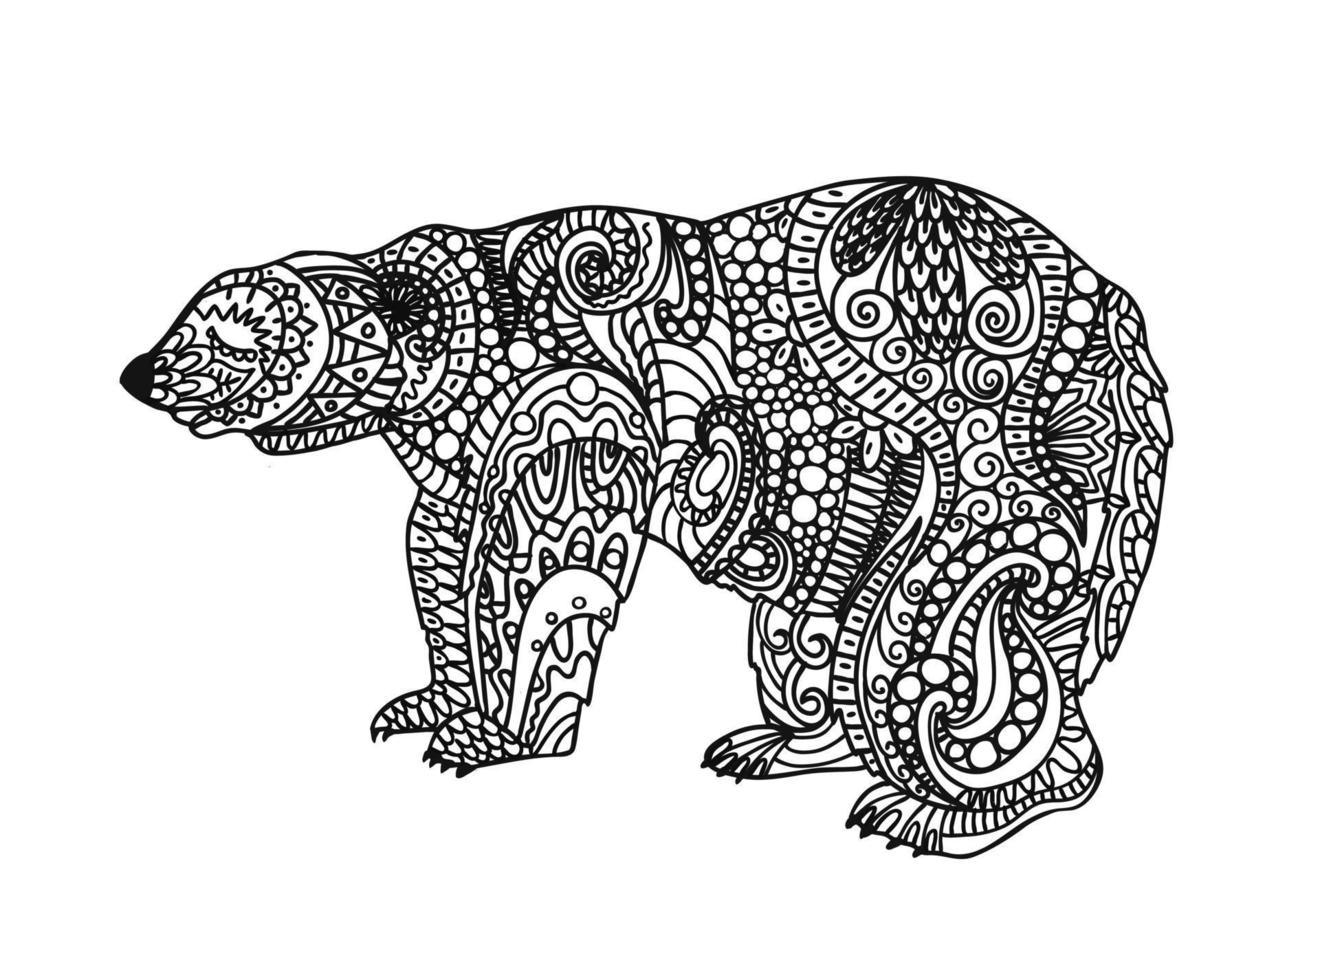 de Björn är svart och vit. polär Björn färg sida. linjär teckning djur. antistress färg sida. vektor illustration isolerat på en vit bakgrund.